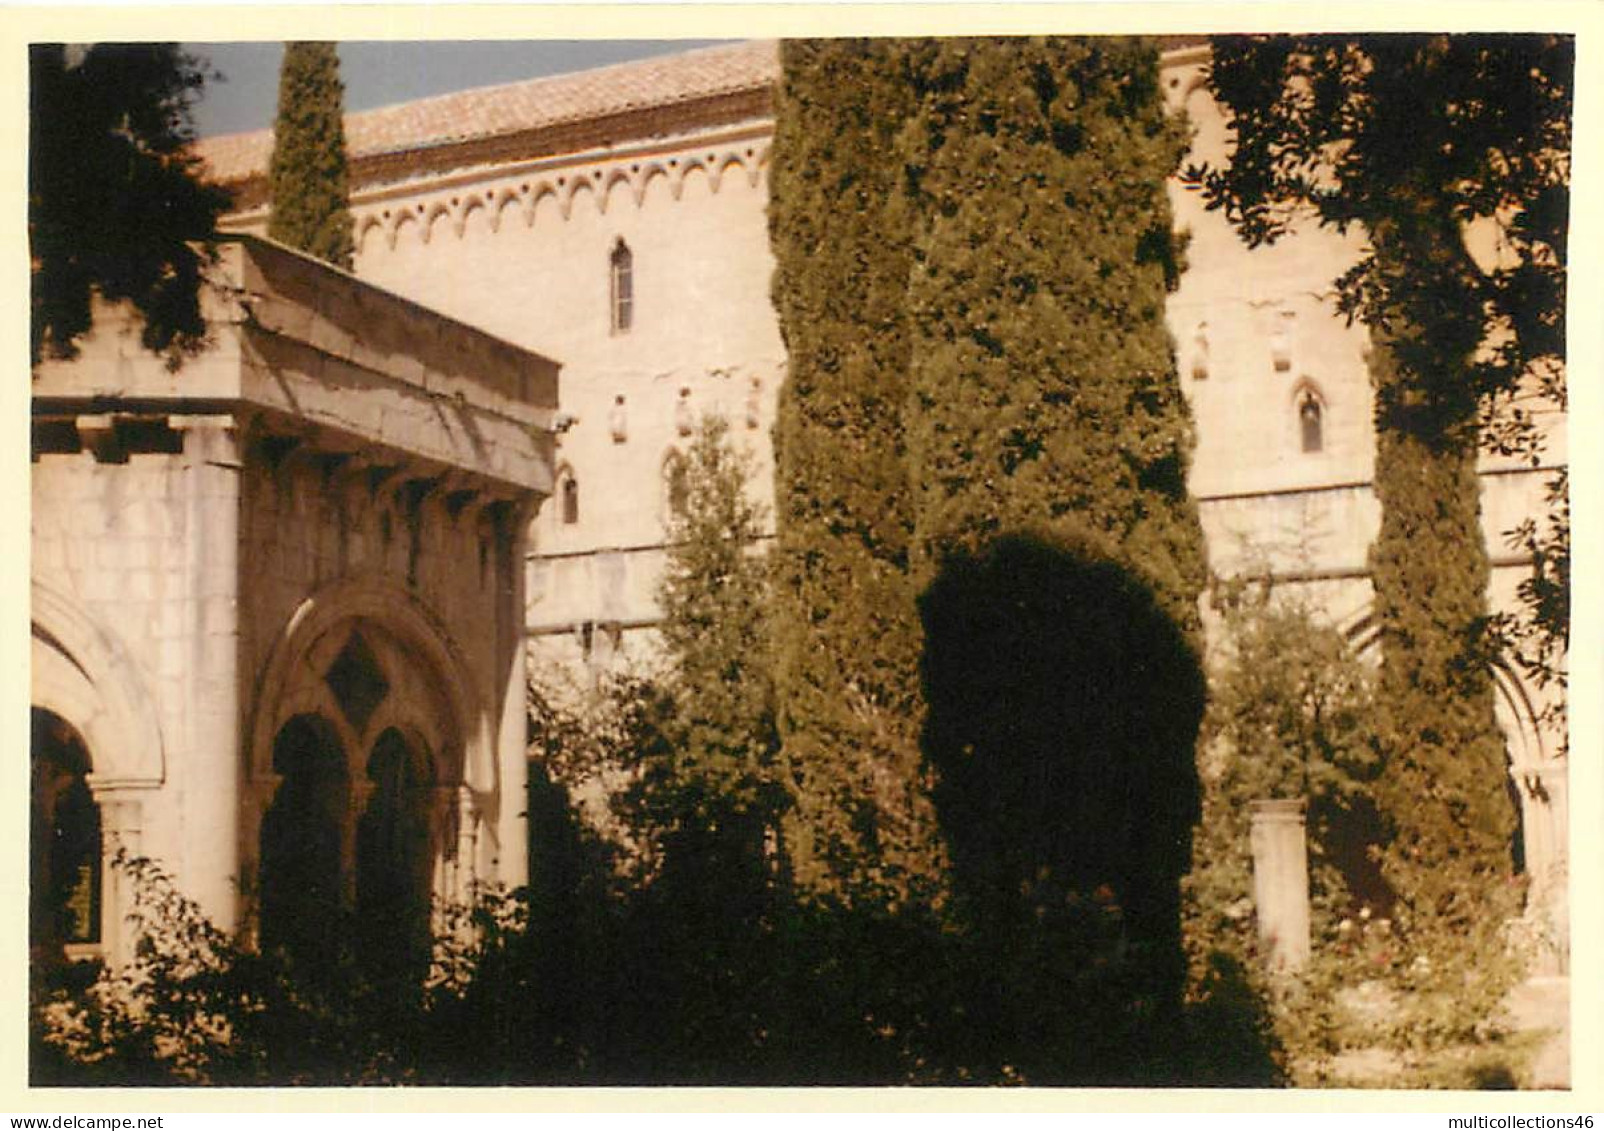 110524A - PHOTO AMATEUR 1960 - ESPAGNE CATALOGNE Monastère De Poblet Le Cloître - Europa